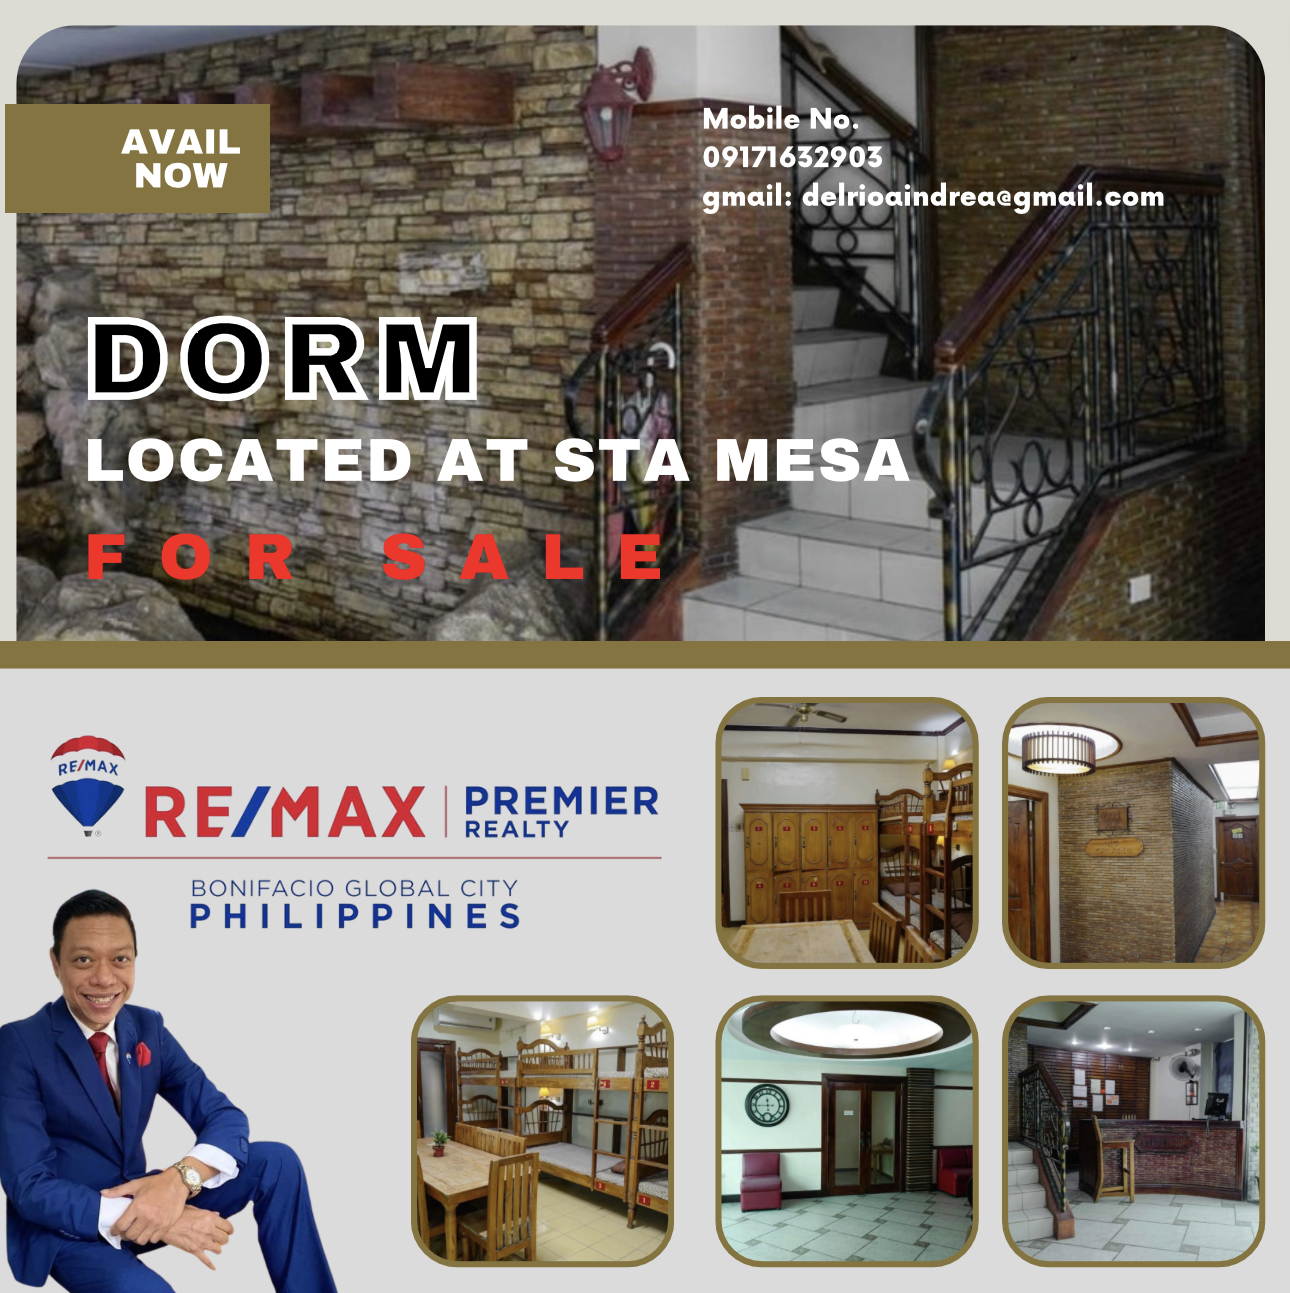 DORM located at Sta. Mesa Manila for Sale‼️